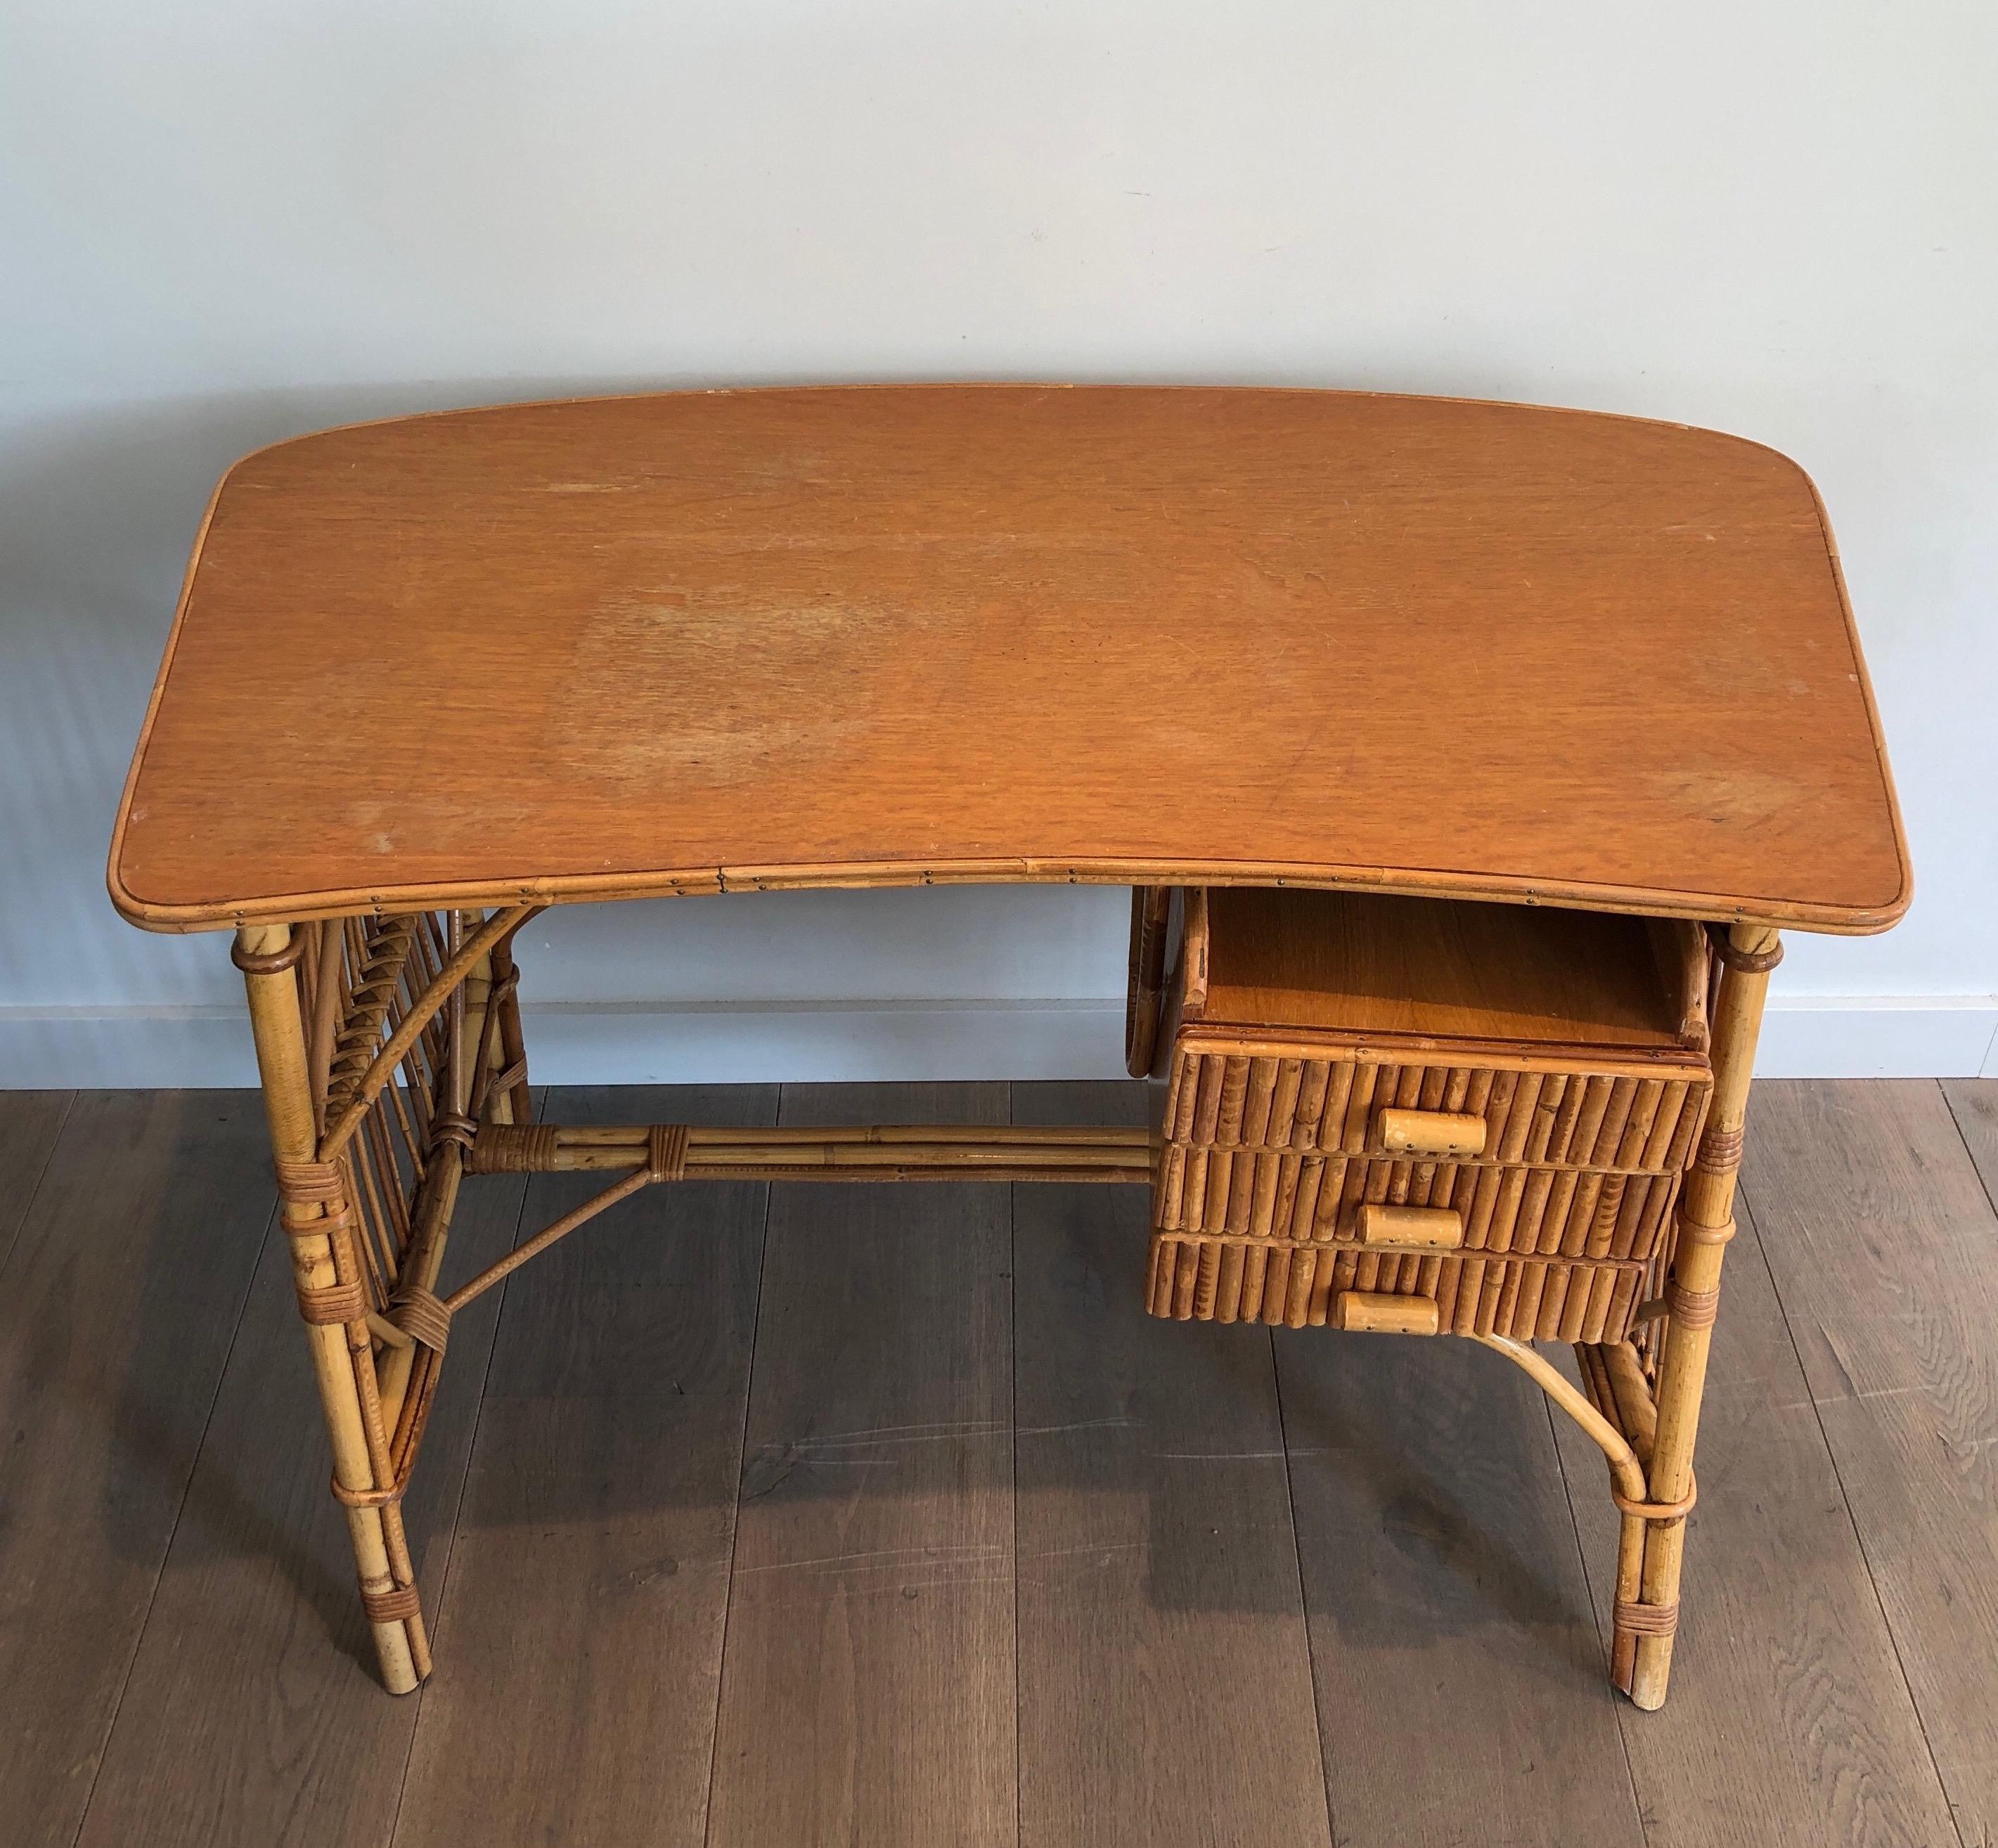 Dieser ungewöhnliche Schreibtisch mit Schubladen ist aus Bambus, Holz und Rattan gefertigt. Es handelt sich um ein Werk, das dem berühmten französischen Hersteller Audoux Minet zugeschrieben wird, um 1970.